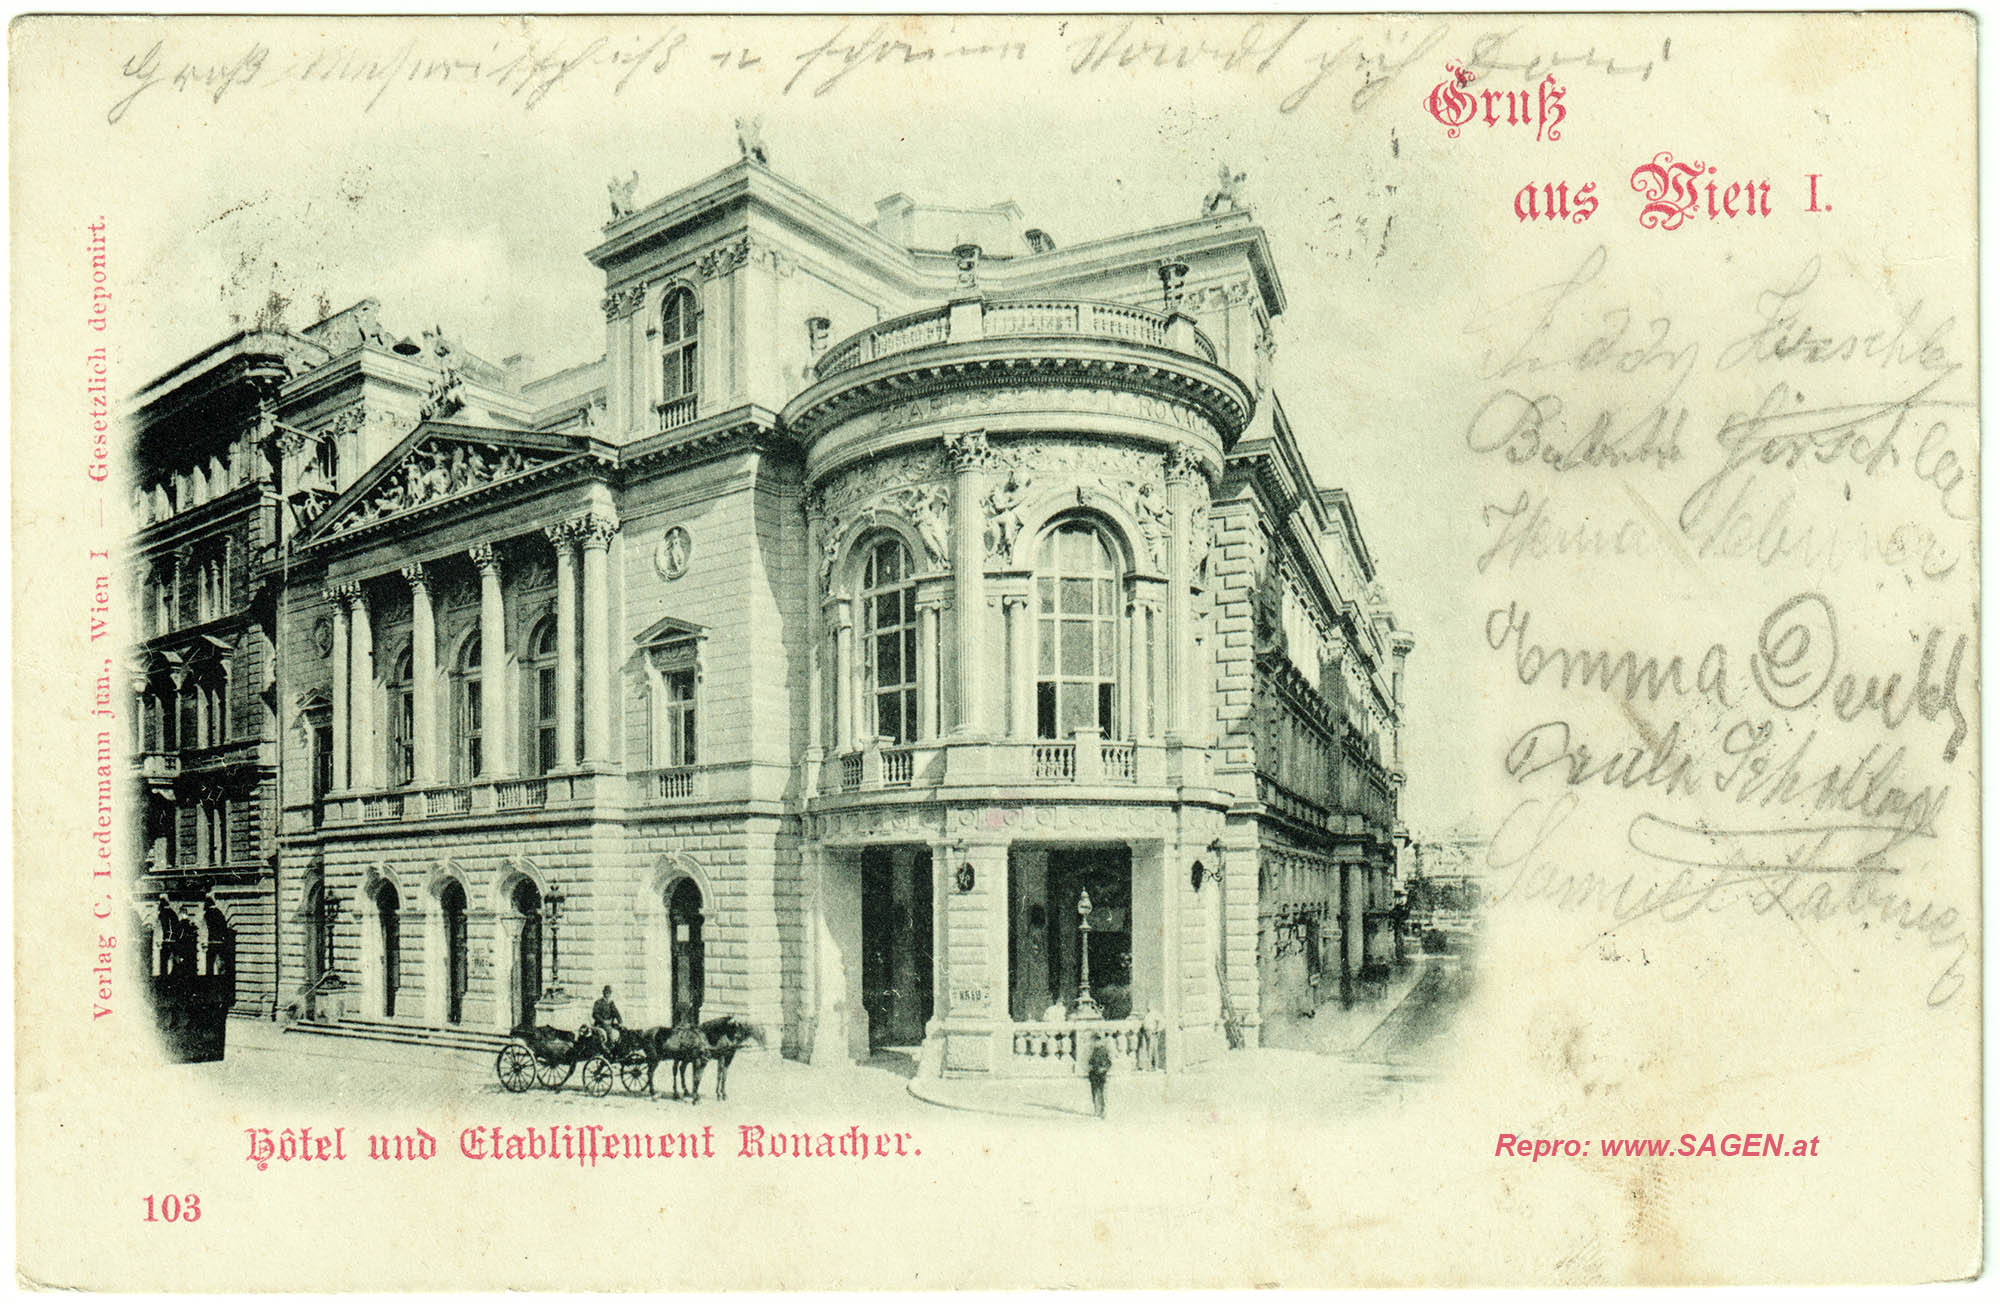 Wien, Hotel und Etablissement Ronacher um 1901